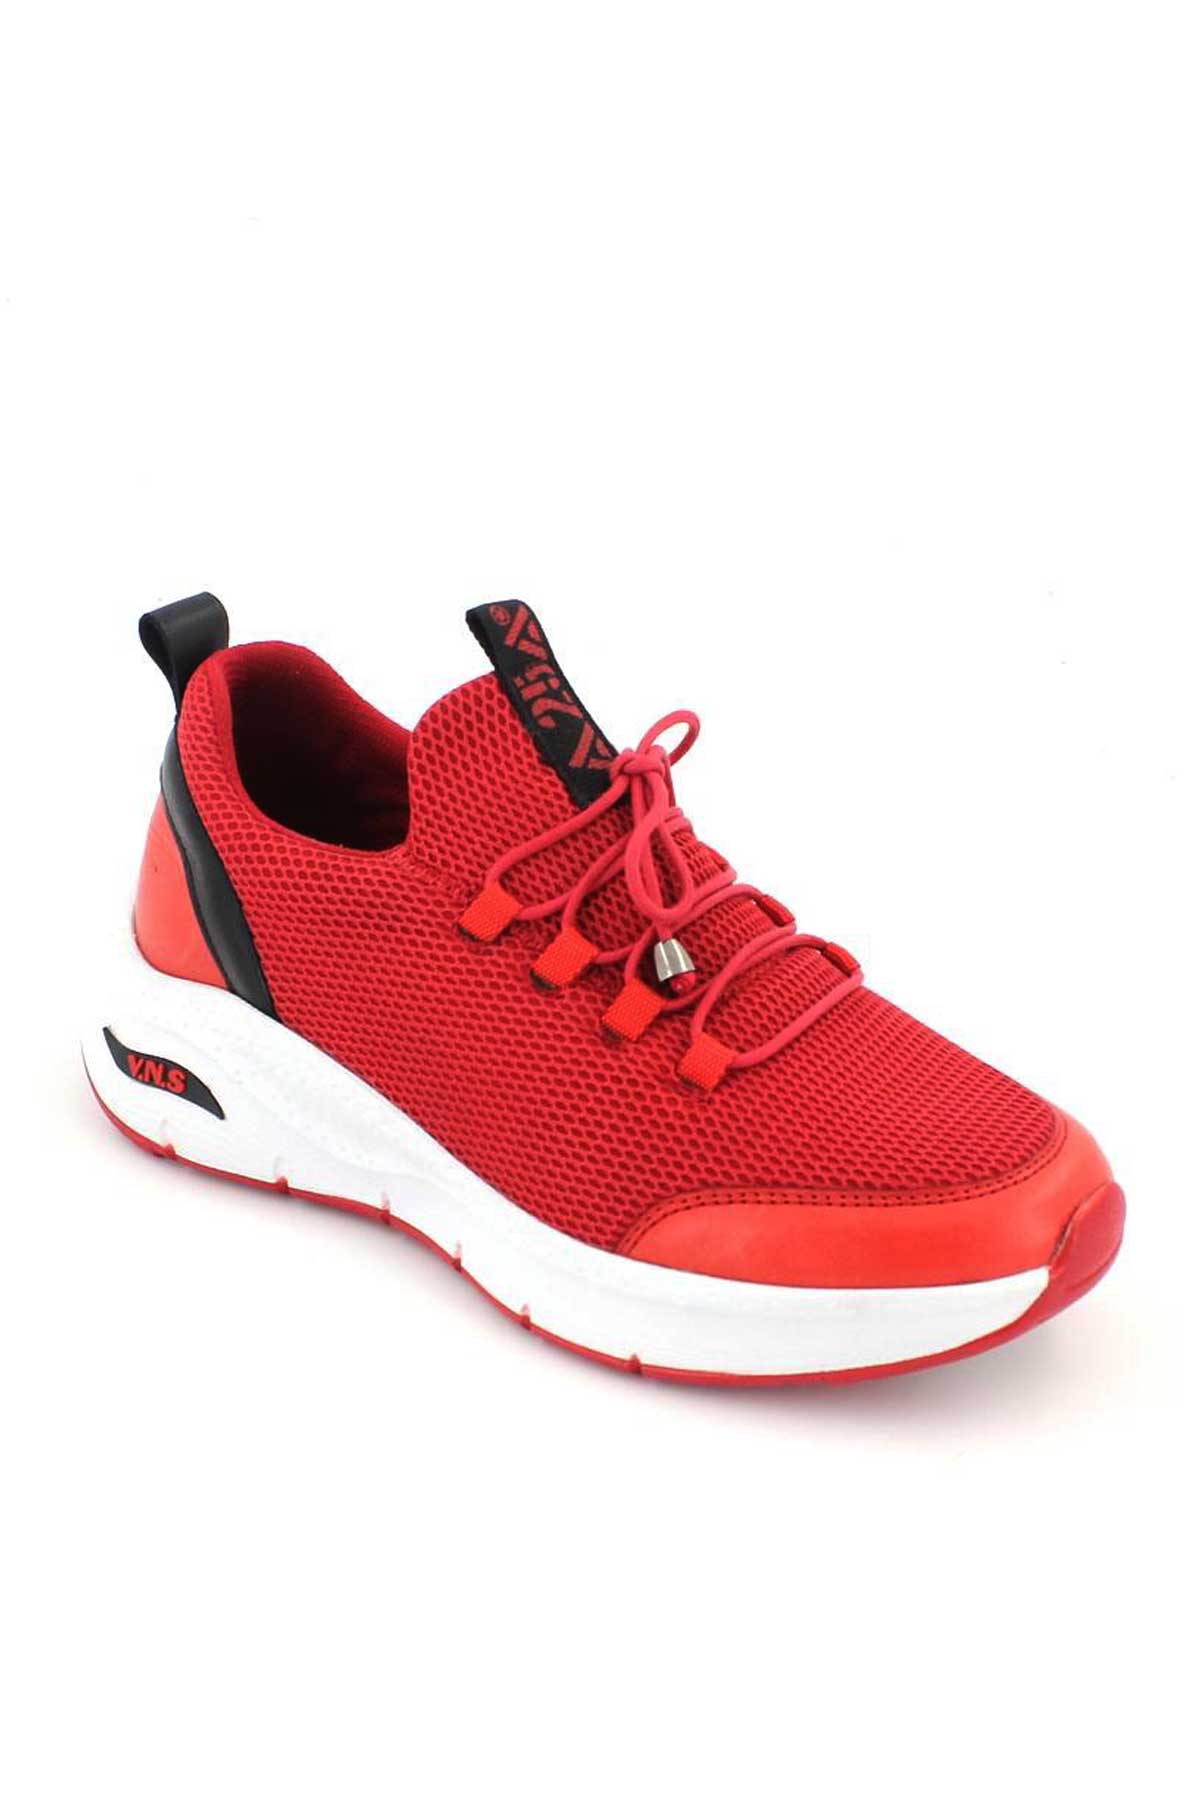 Kadın Sneakers Kırmızı 2115004Y